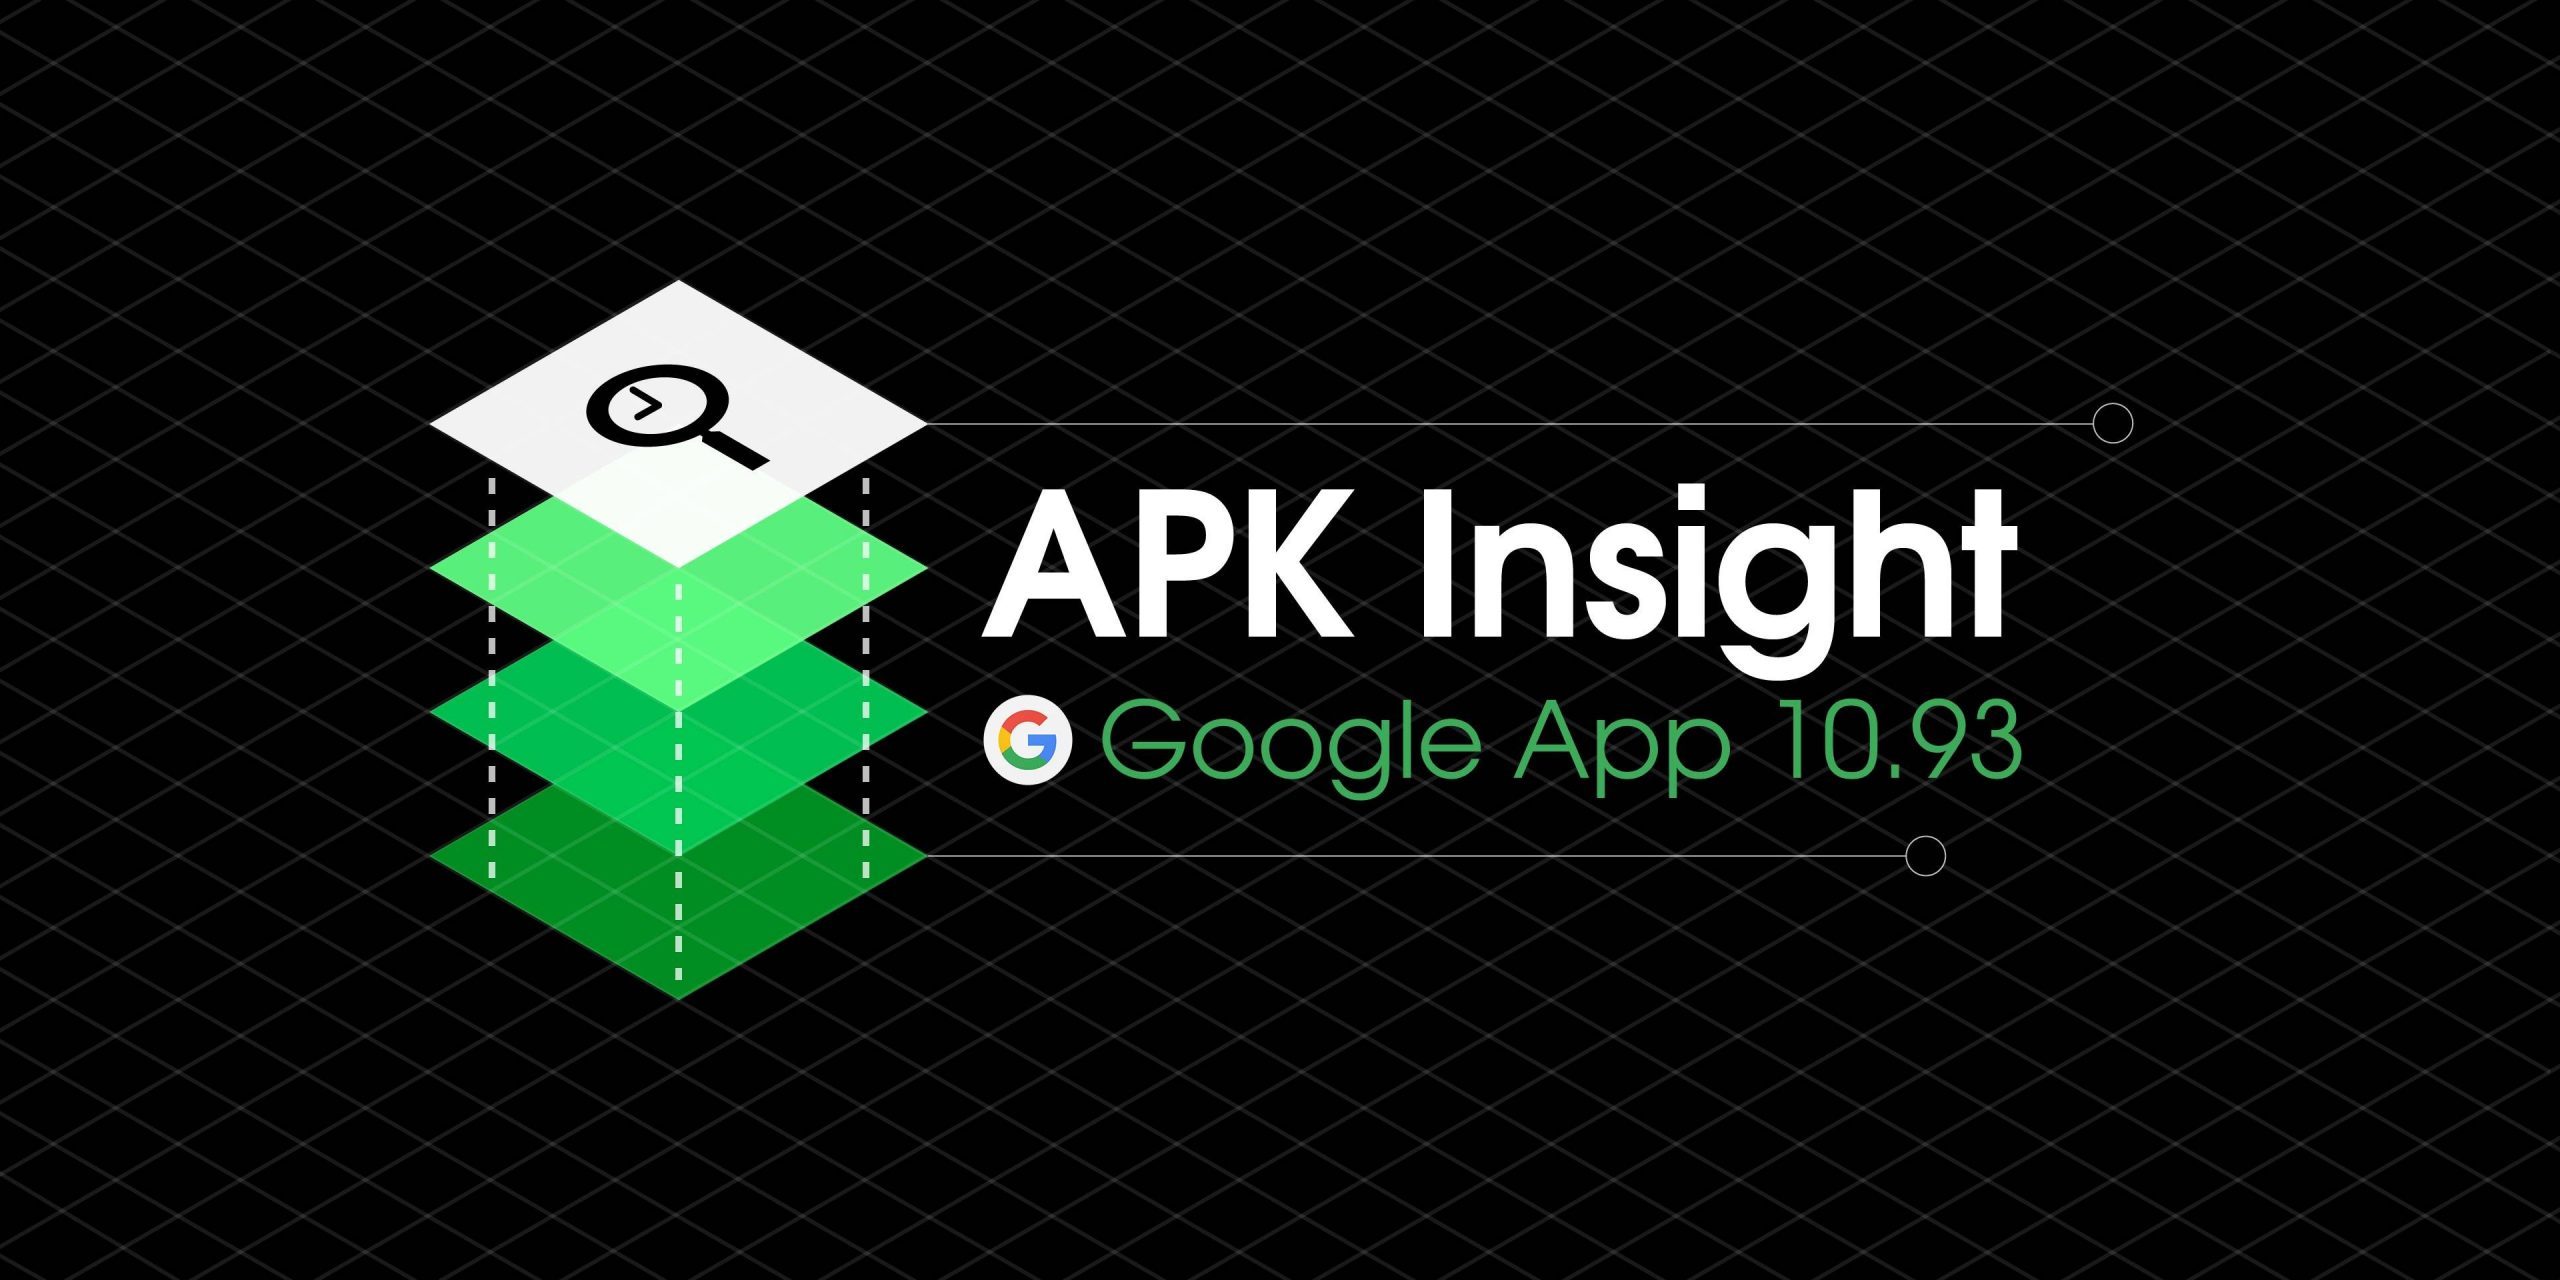 Google app 10.93 prepara configurações "gerais" do assistente, gravando pronúncias para contatos [APK Insight]